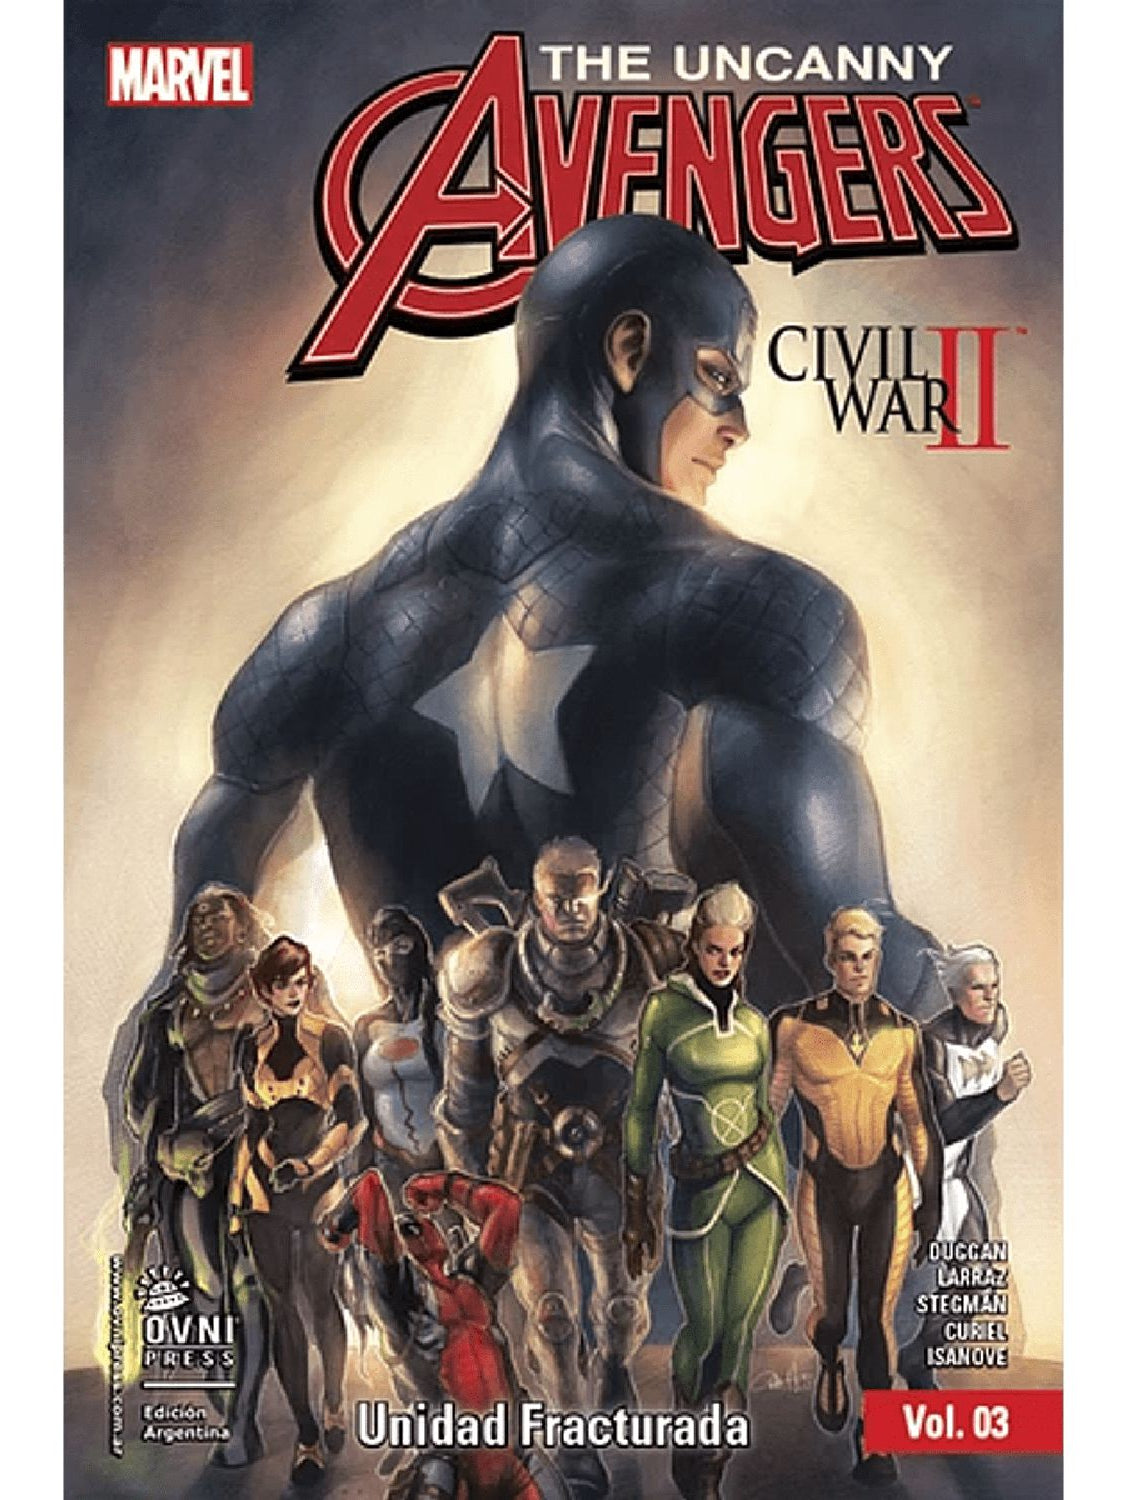 The Uncanny Avengers #3 Unidad Fracturada OVNI Press ENcuadrocomics